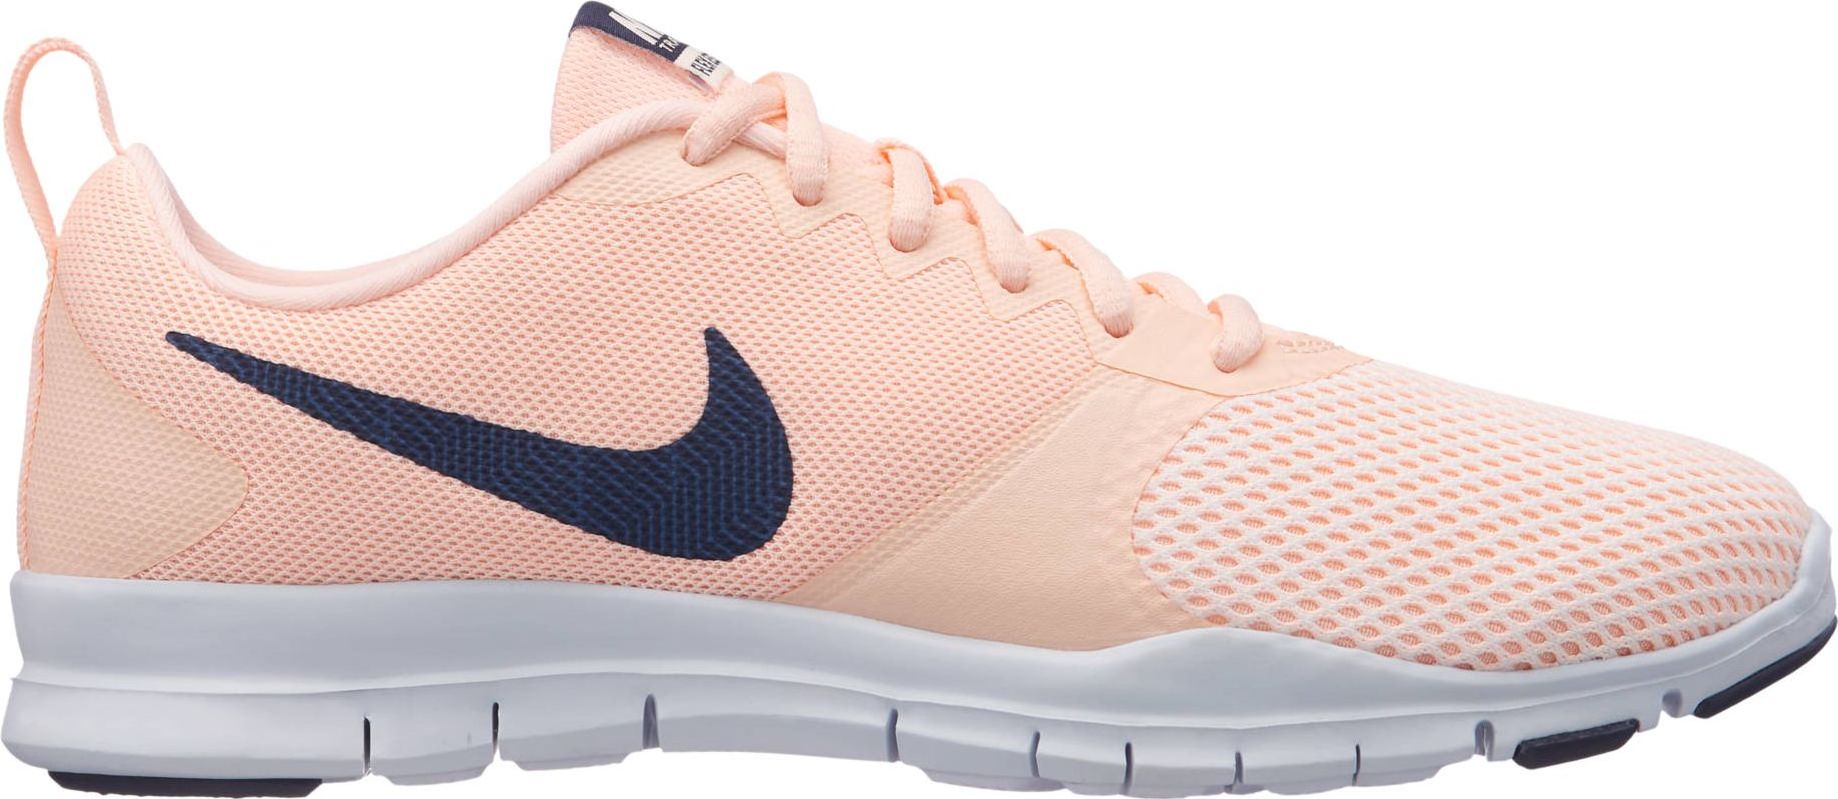 Кроссовки для фитнеса женские Nike Flex Essential, цвет: розовый. 924344-800. Размер 6,5 (36,5)